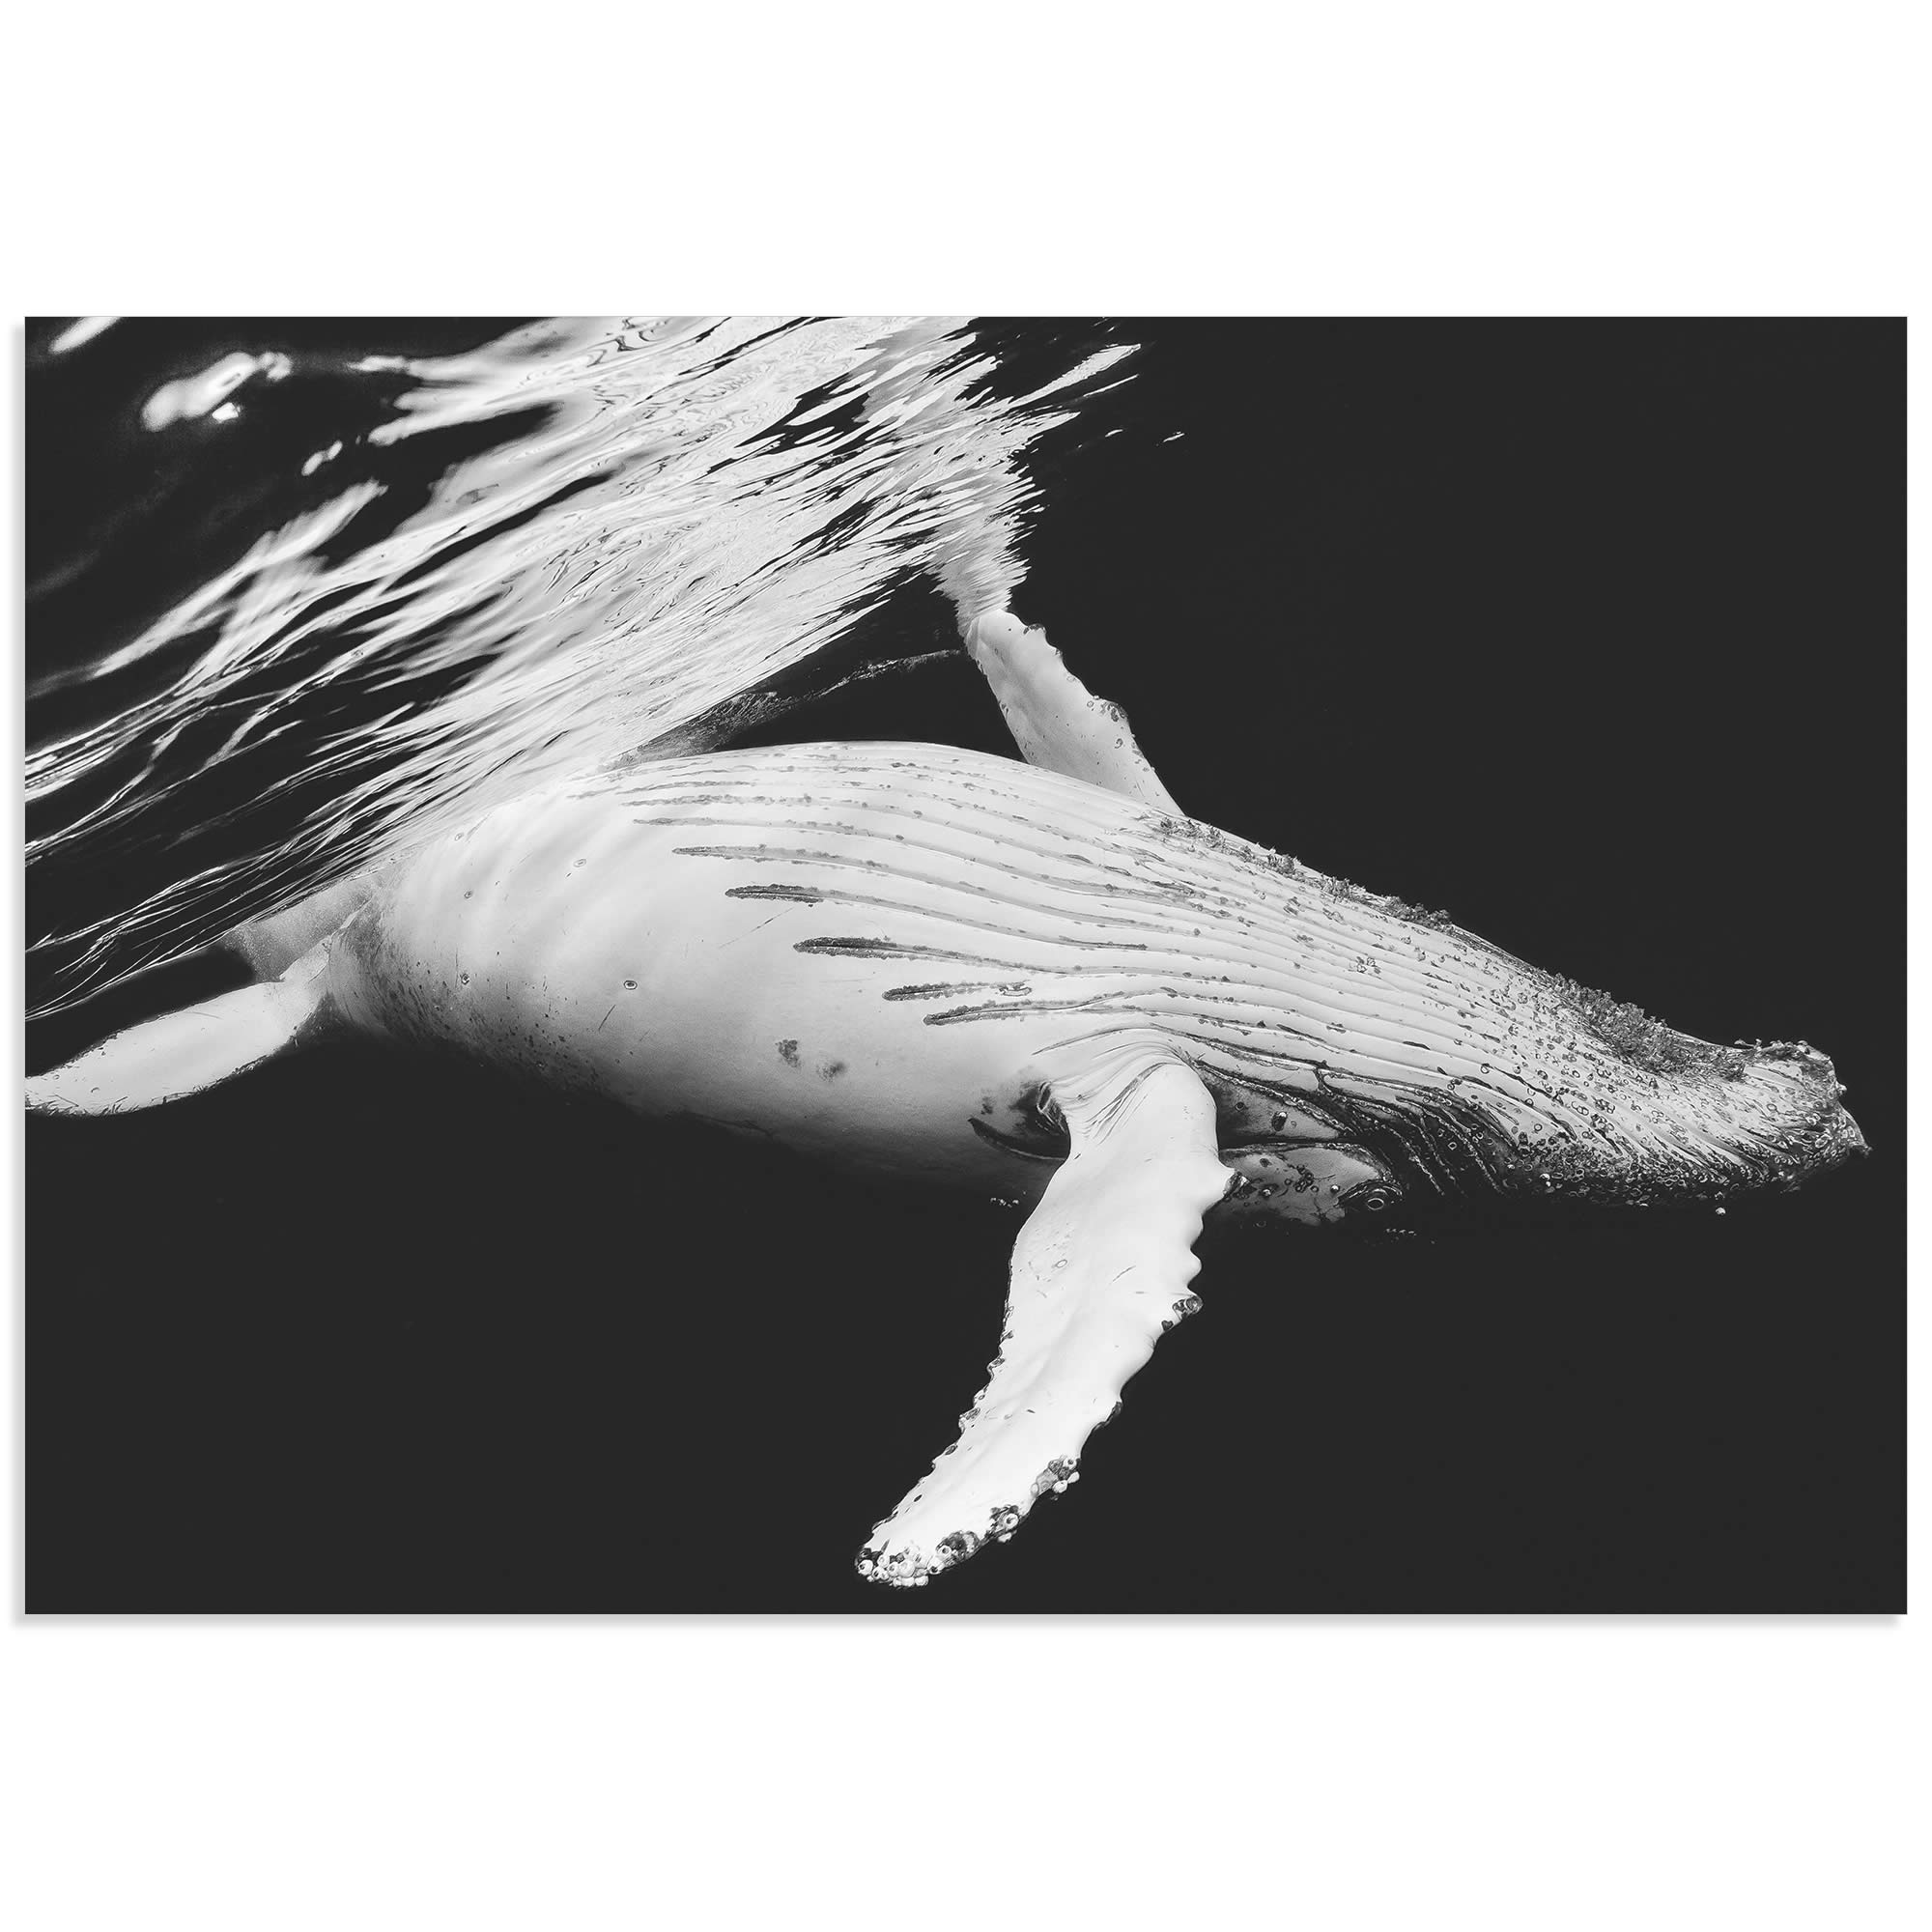 Кит живет в воде. Кит альбинос. Горбатый кит альбинос. Белый кит Мигалу. Белый кит Горбач.